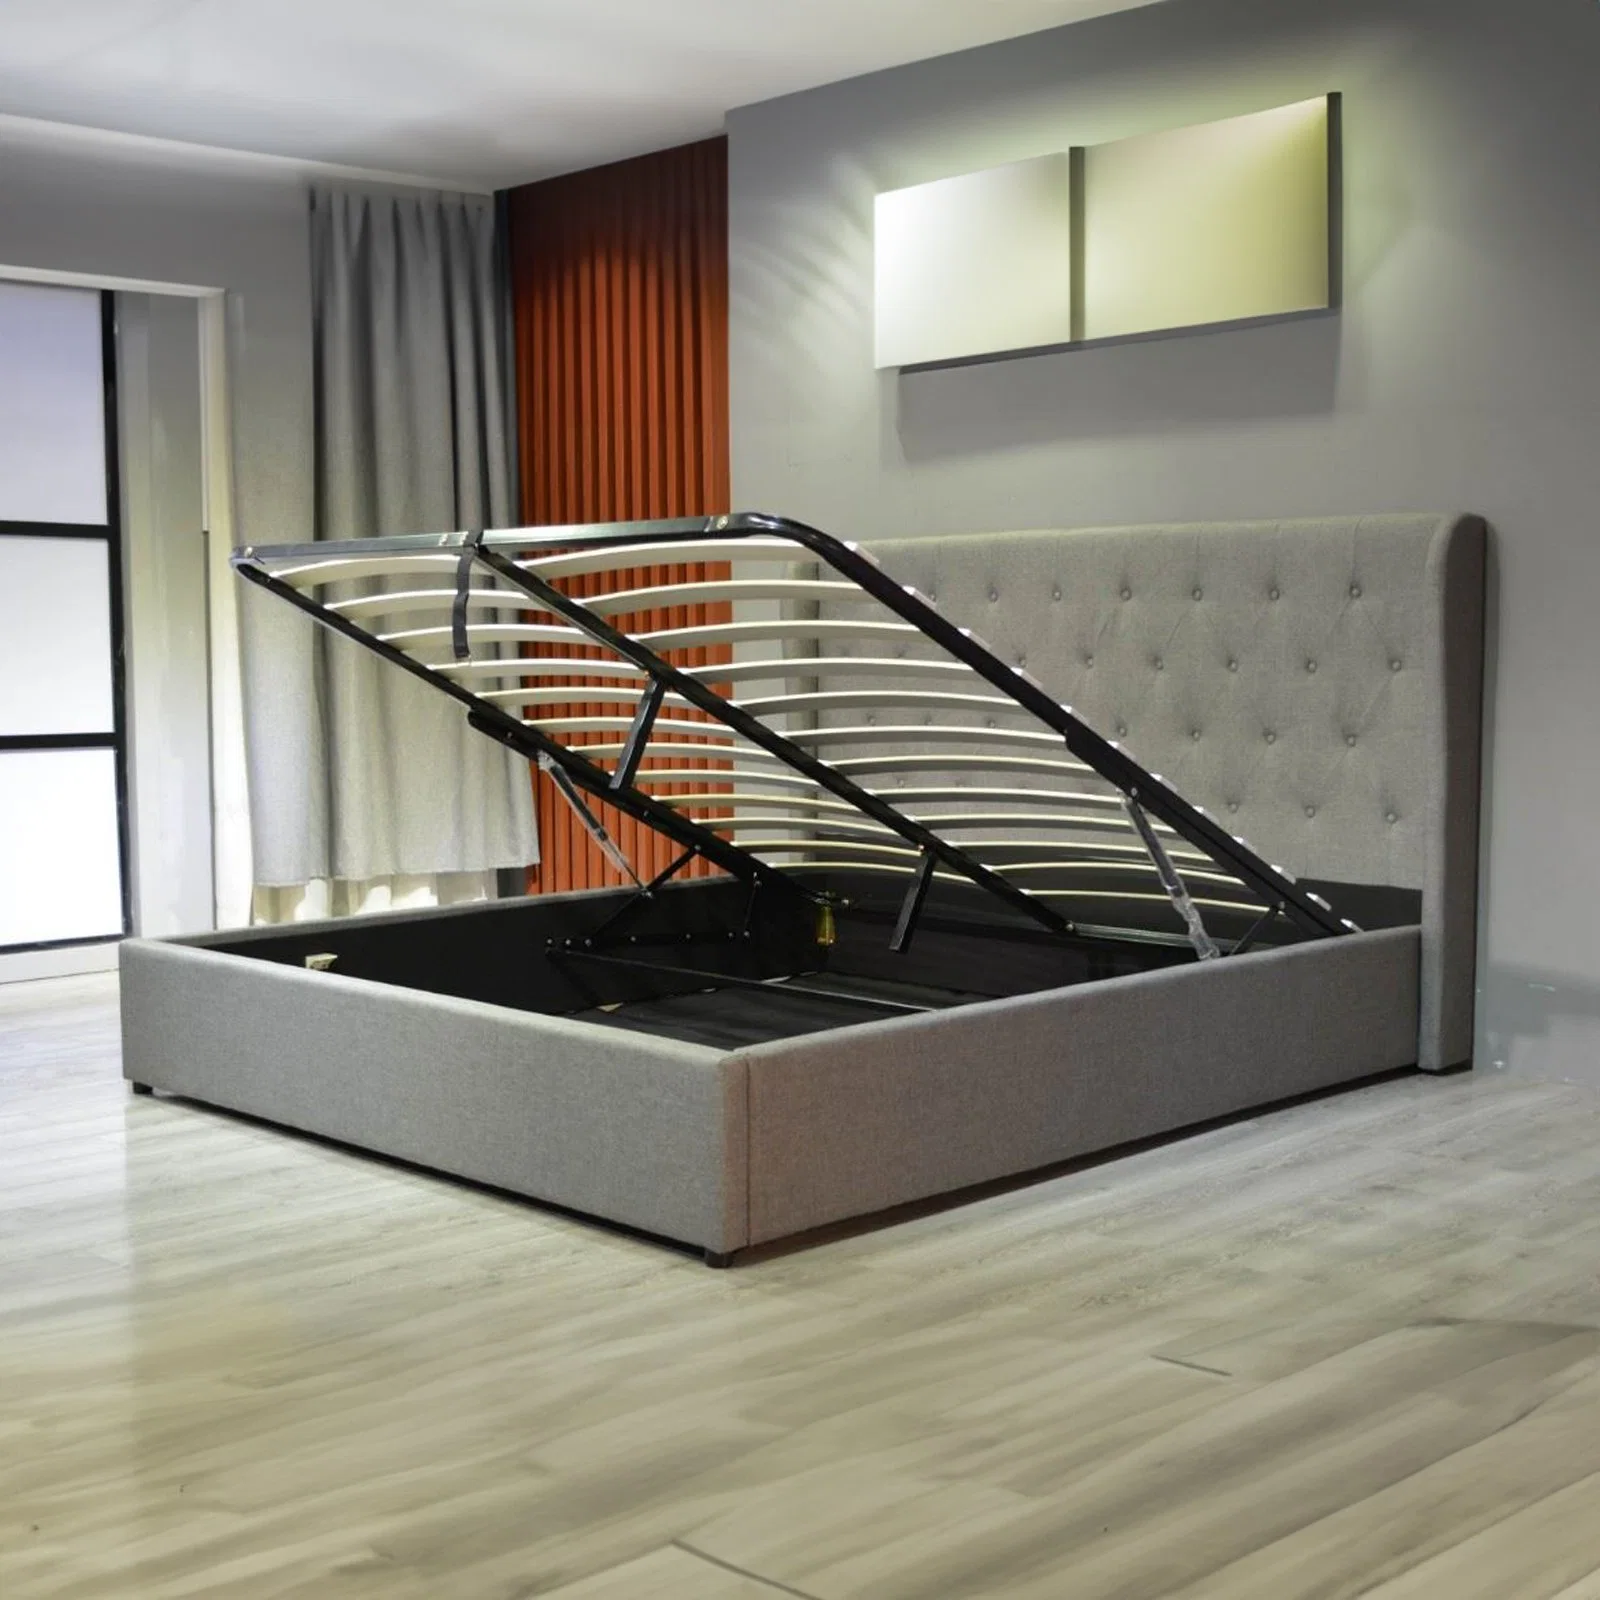 Huayang Luxury Bed Frame غرفة نوم مزدوجة بالجملة بحجم كوين منزل خشبي صناعة الأثاث مصنع SGS شهادة تخزين الغاز سرير الرفع تخزين سرير من القماش